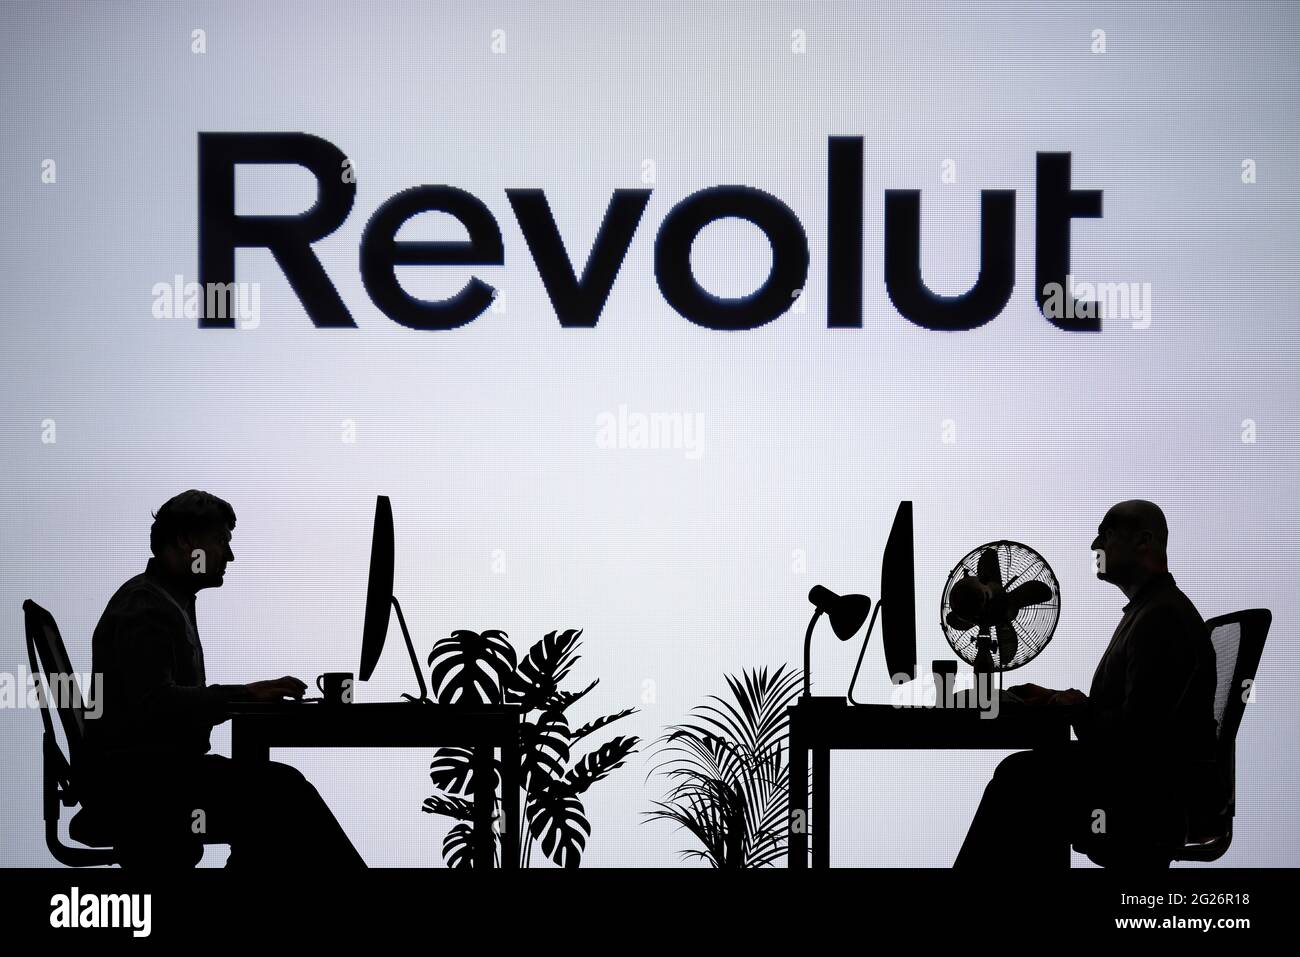 El logotipo de la revolución se ve en una pantalla LED en el fondo, mientras que dos personas con siluetas trabajan en un entorno de oficina (sólo para uso editorial) Foto de stock